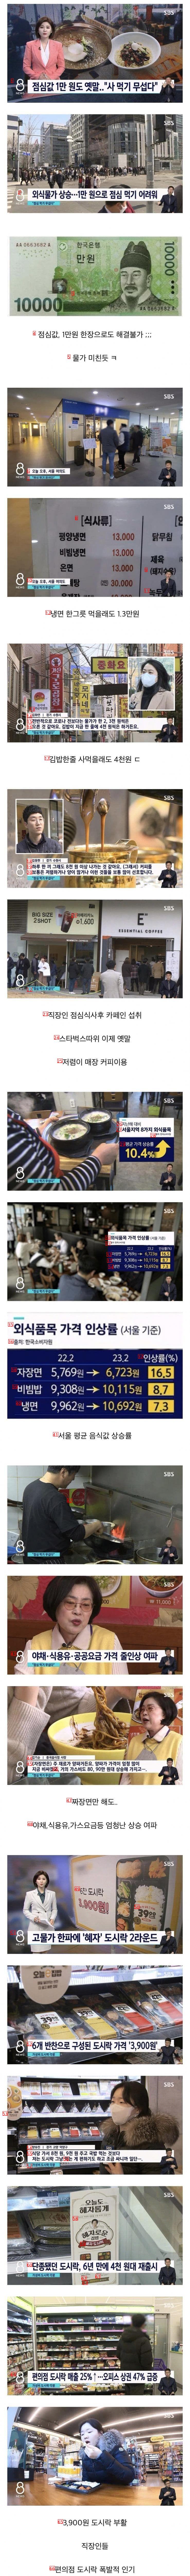 大韓民国ソウルの最近の食代水準